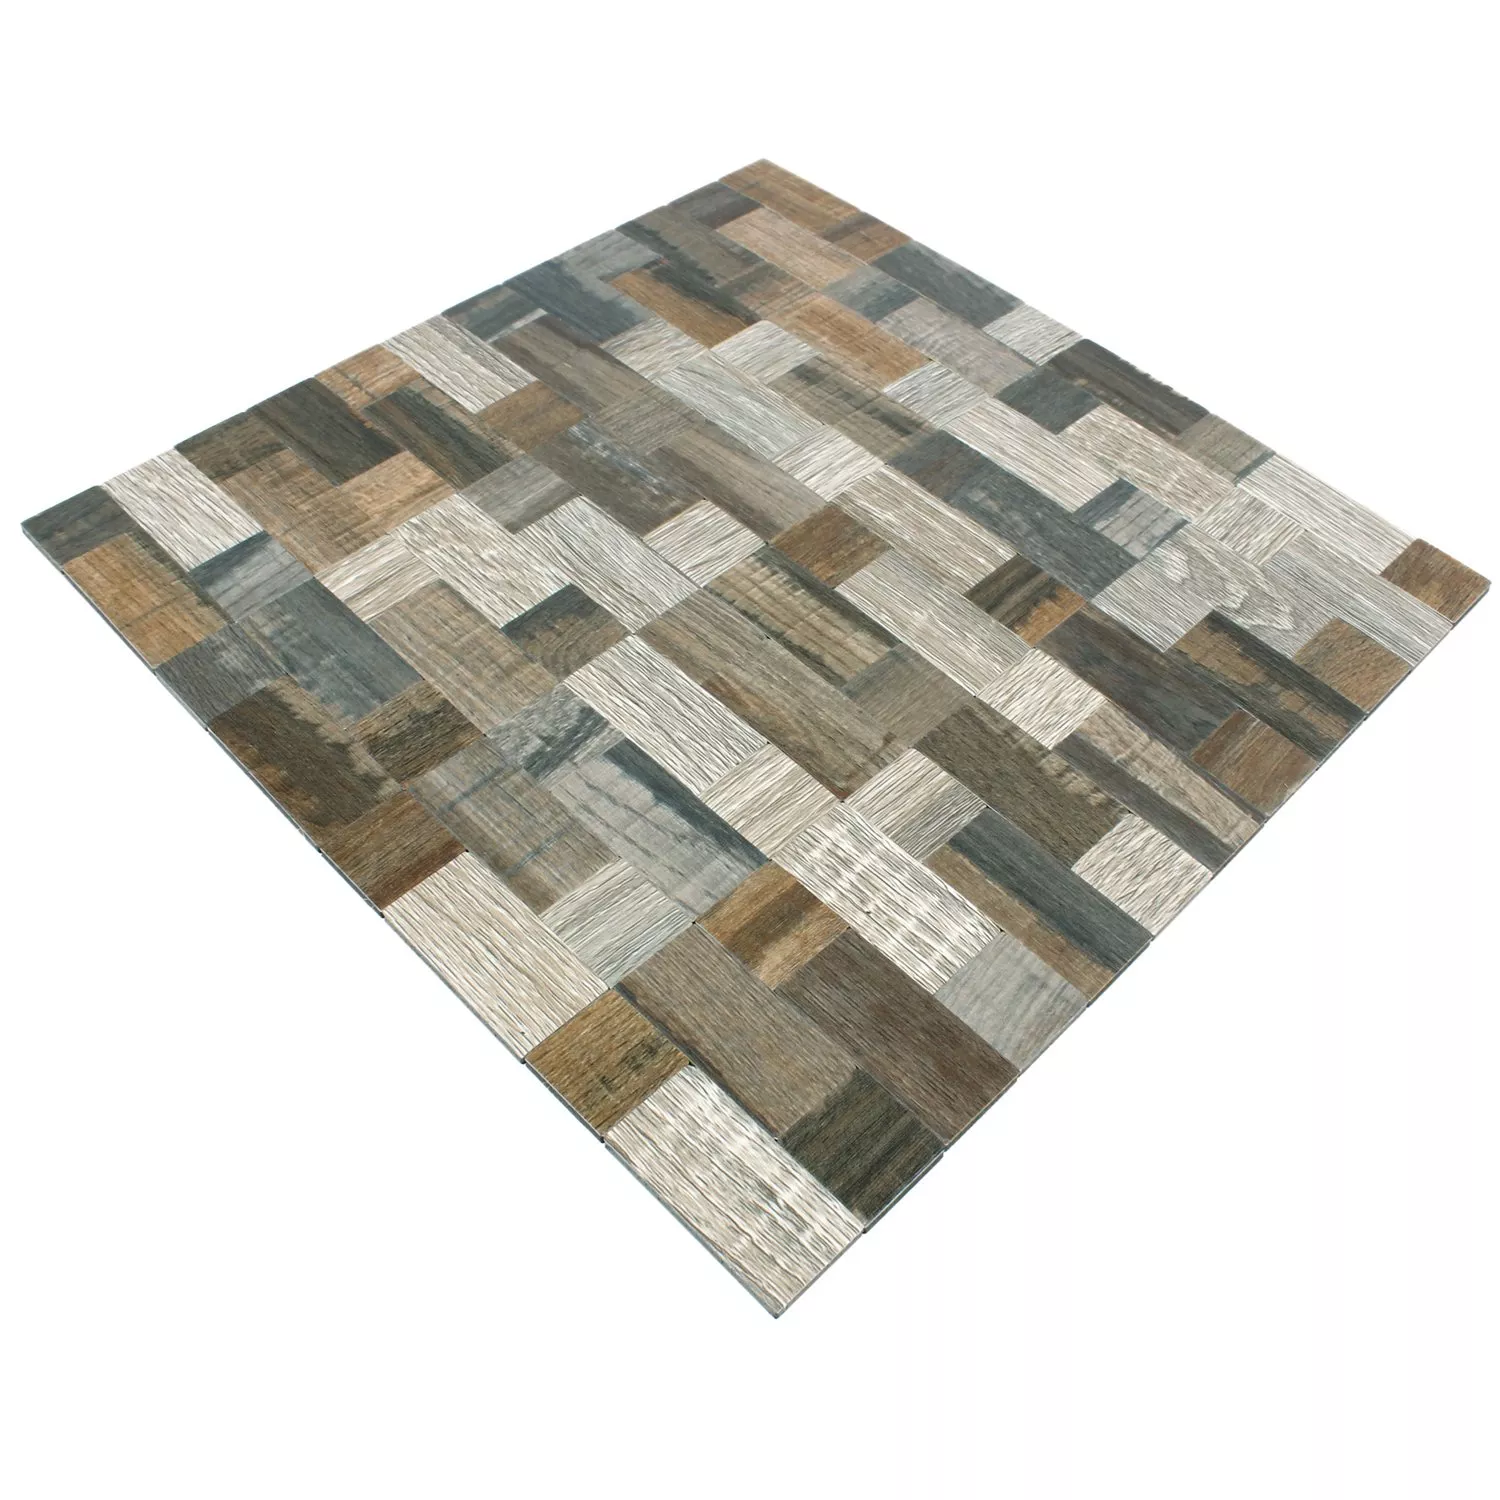 Sample Mosaic Tiles Wood Optic Metal Self Adhesive Morelia Kombi